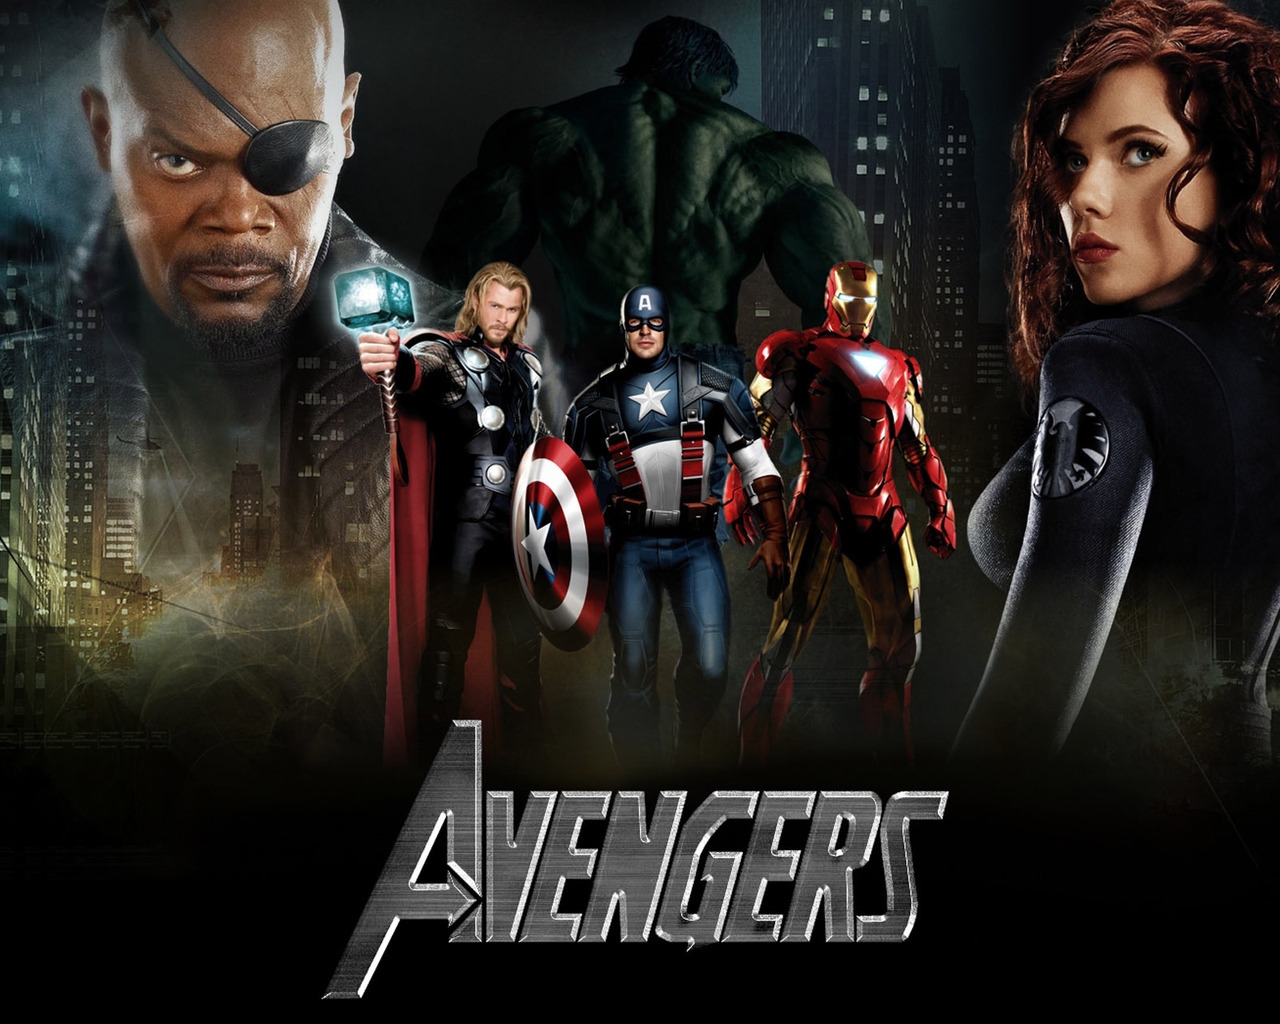 Scarlett Johansson The Avengers 2 for 1280 x 1024 resolution